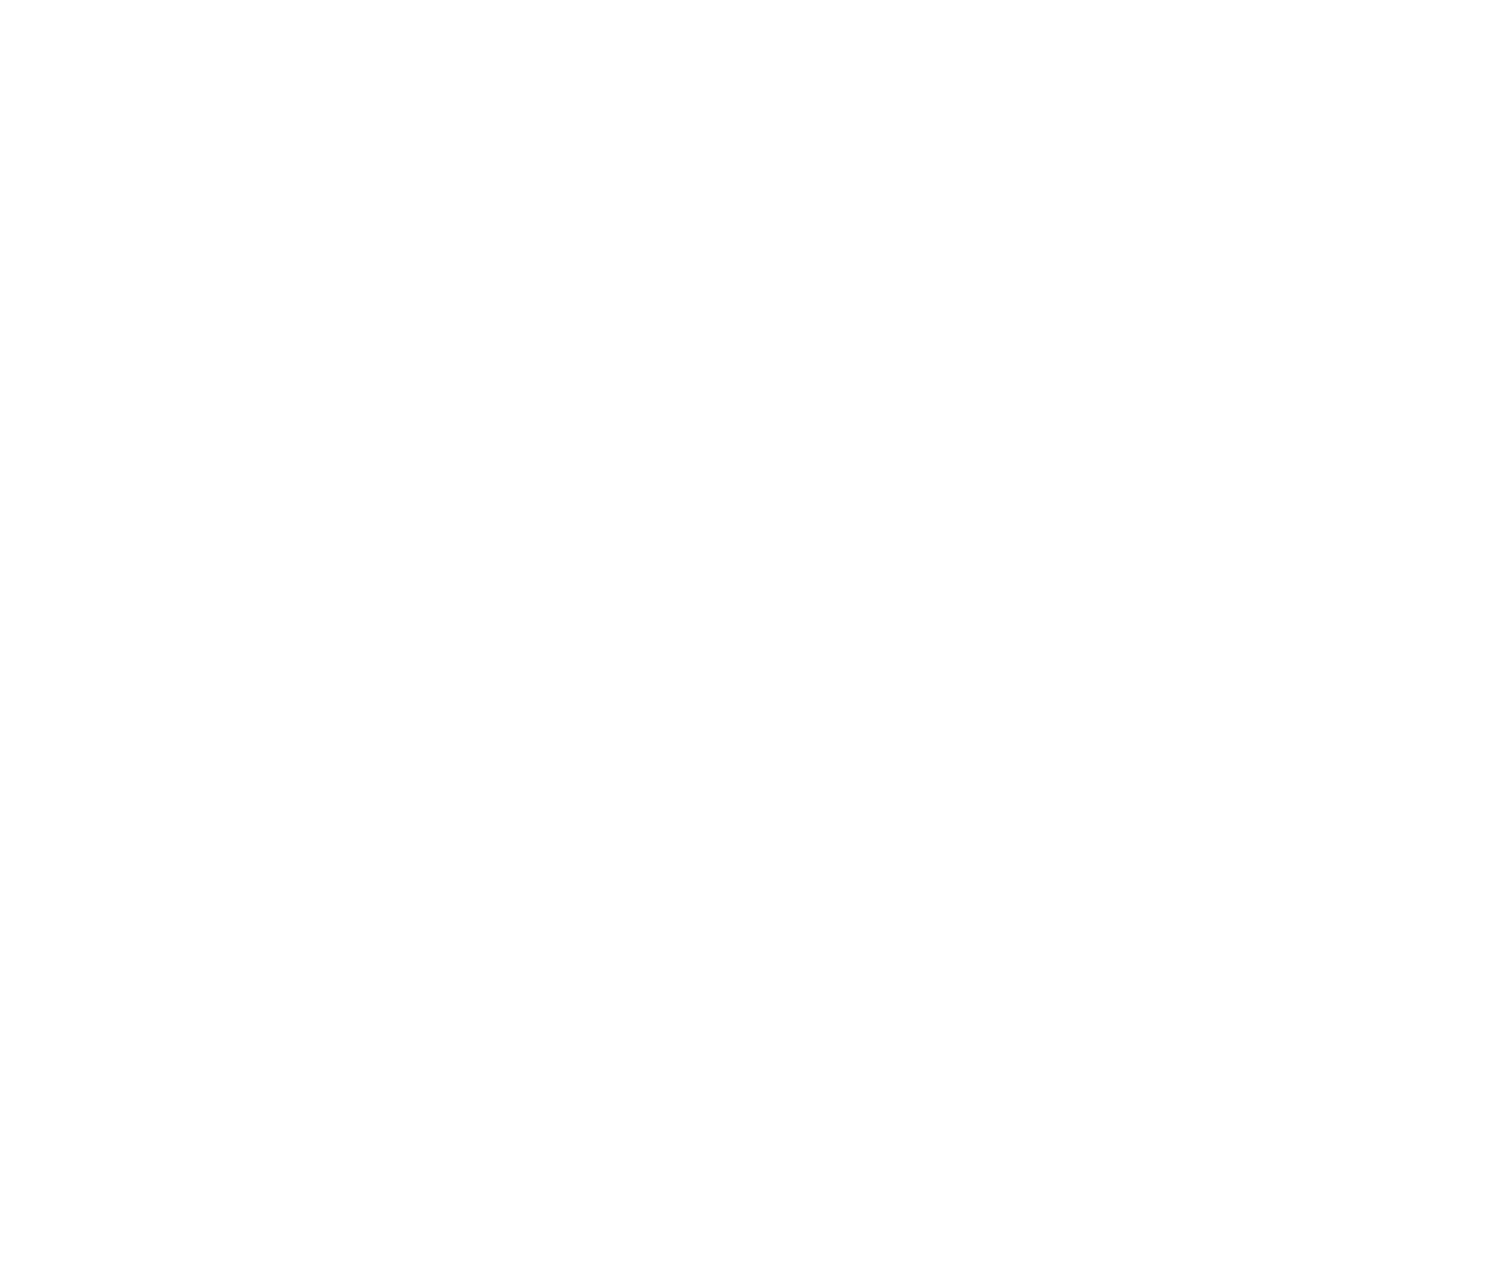 Cobourg Lions Community Centre